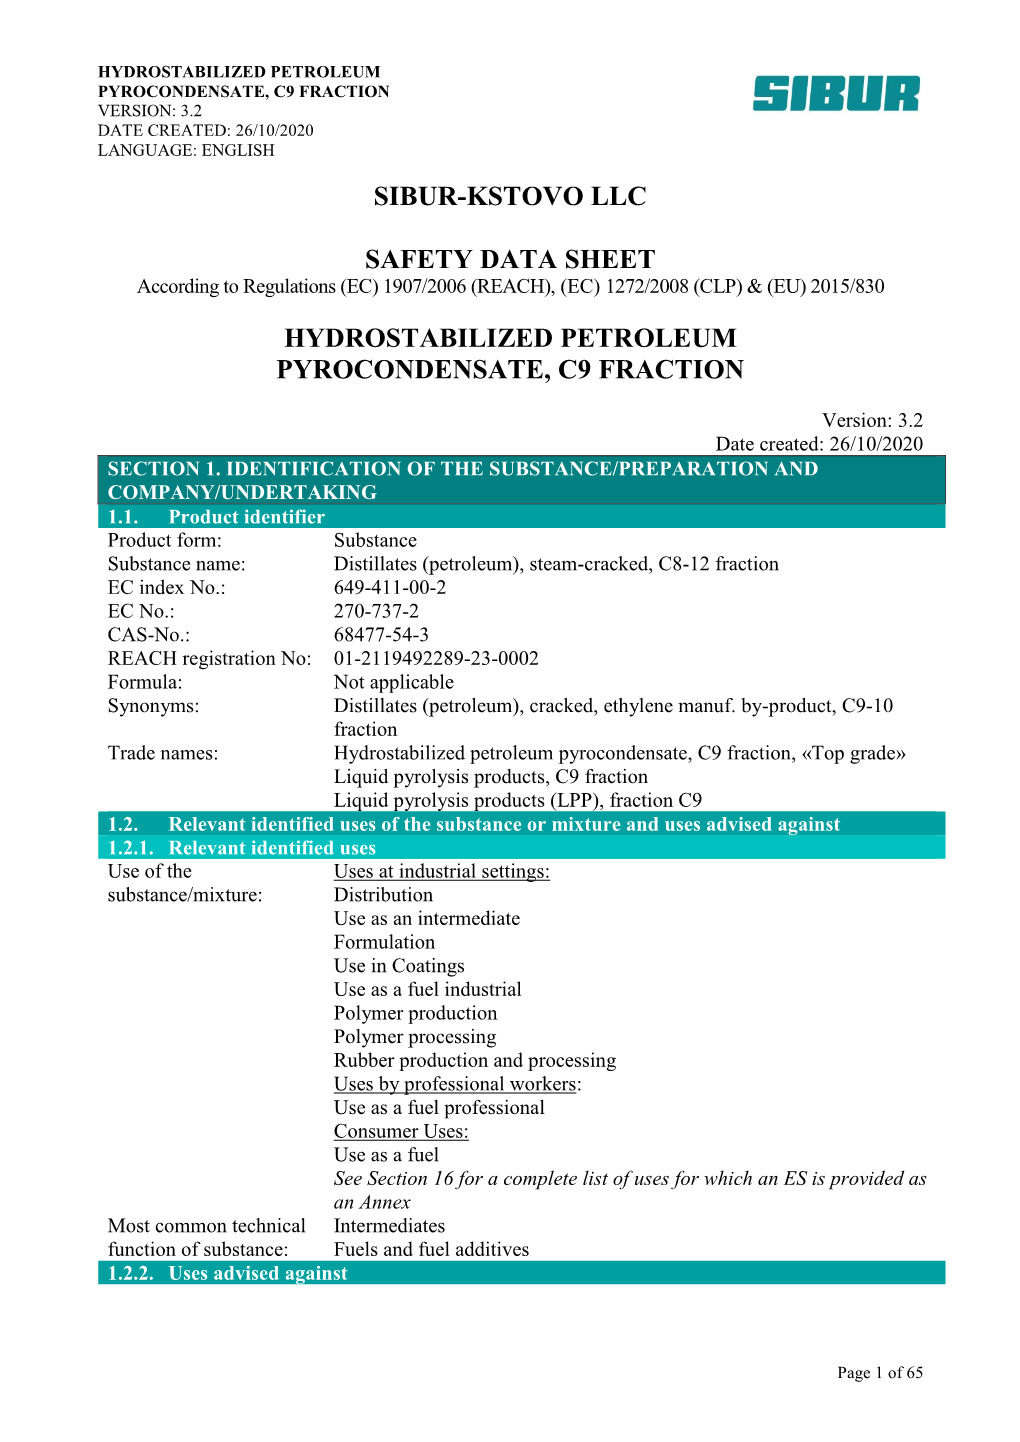 Sibur-Kstovo Llc Safety Data Sheet